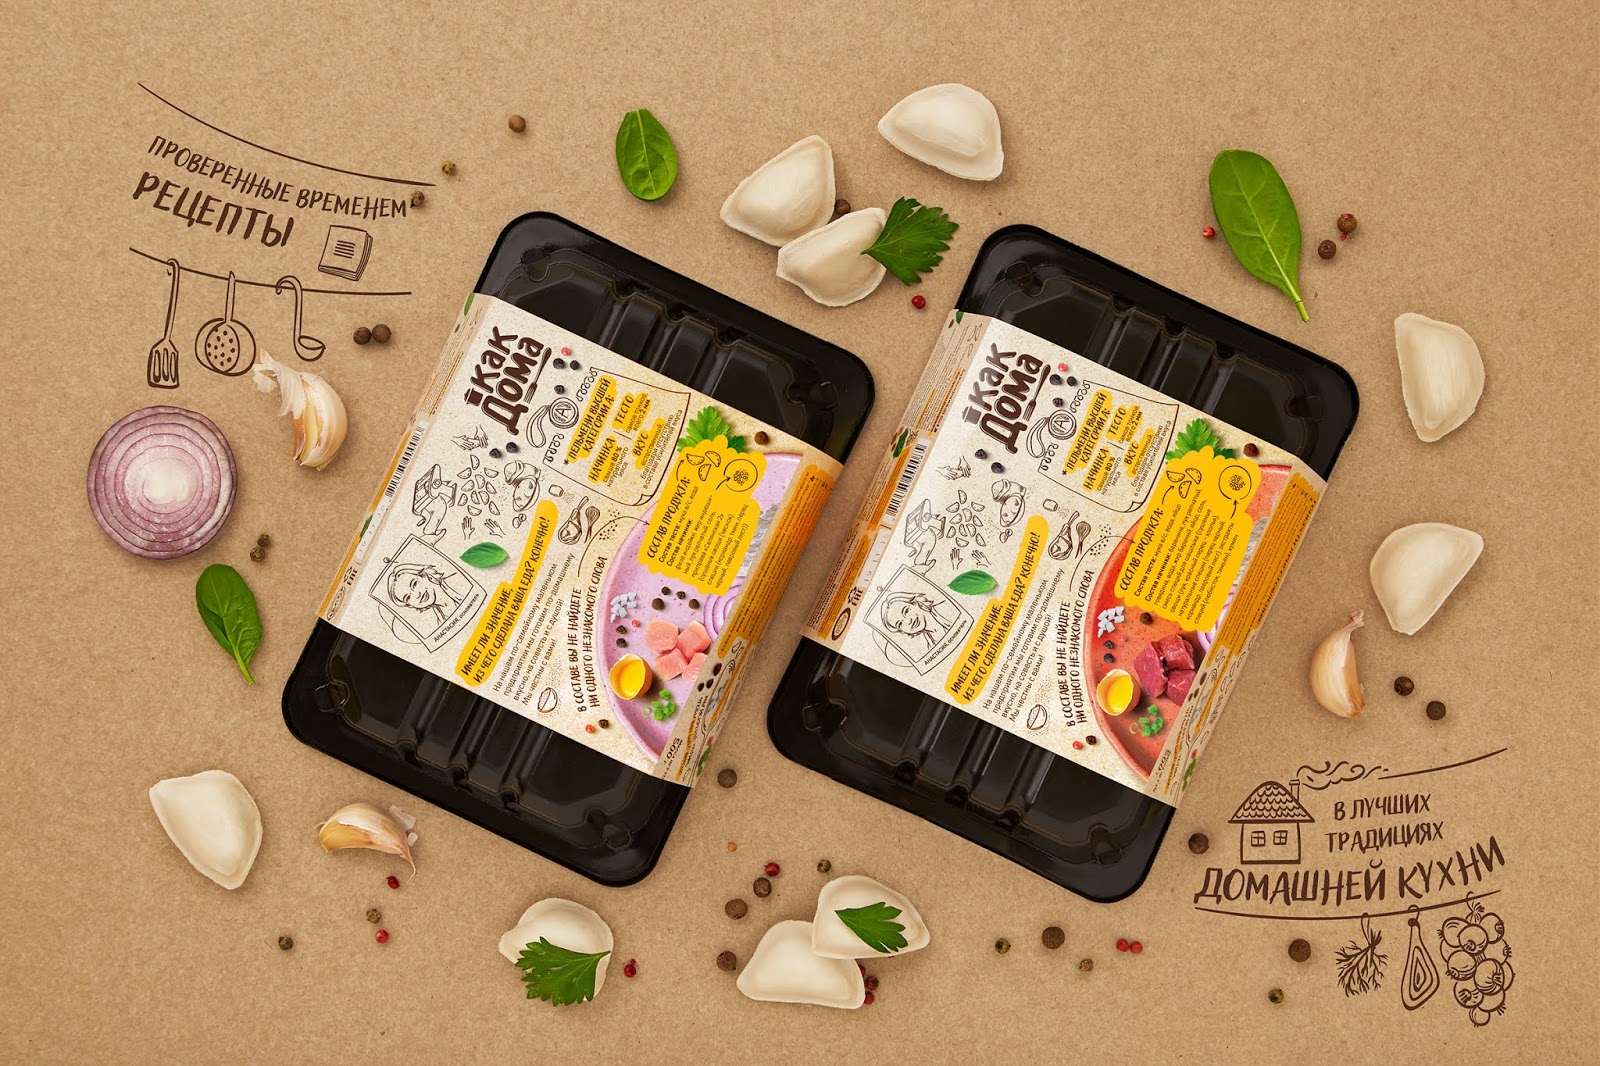 速食水饺食品西安oe欧亿体育app官方下载
品牌策划包装设计VI设计